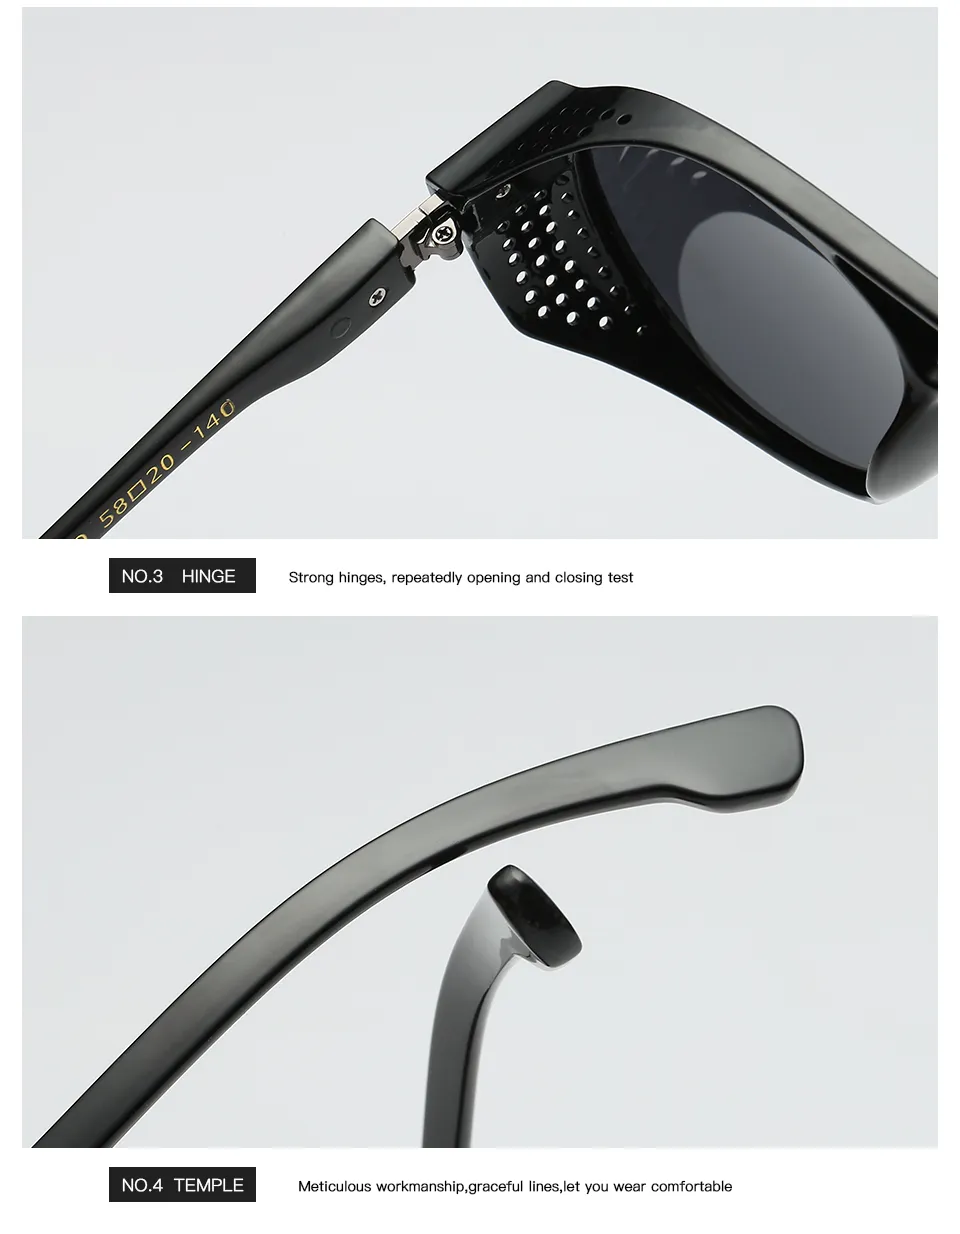 Gafas de sol polarizadas redondas Retro Steampunk para hombres y mujeres, gafas de diseñador de marca, protección UV 293d